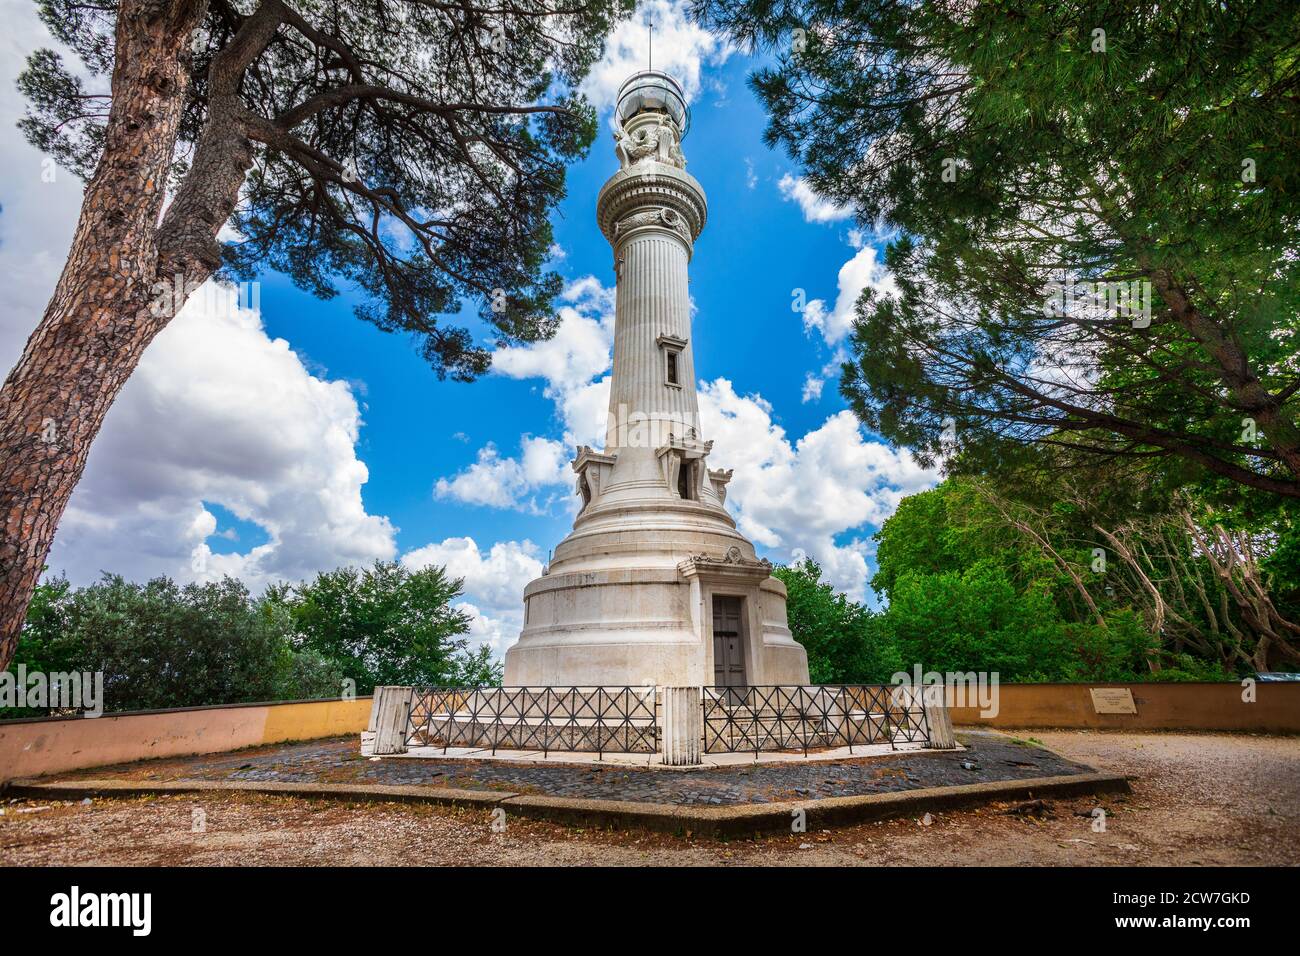 Le phare de Janicule est également appelé le phare de Rome ou le phare des Italiens d'Argentine. L'un des monuments les plus connus de la Banque D'Images